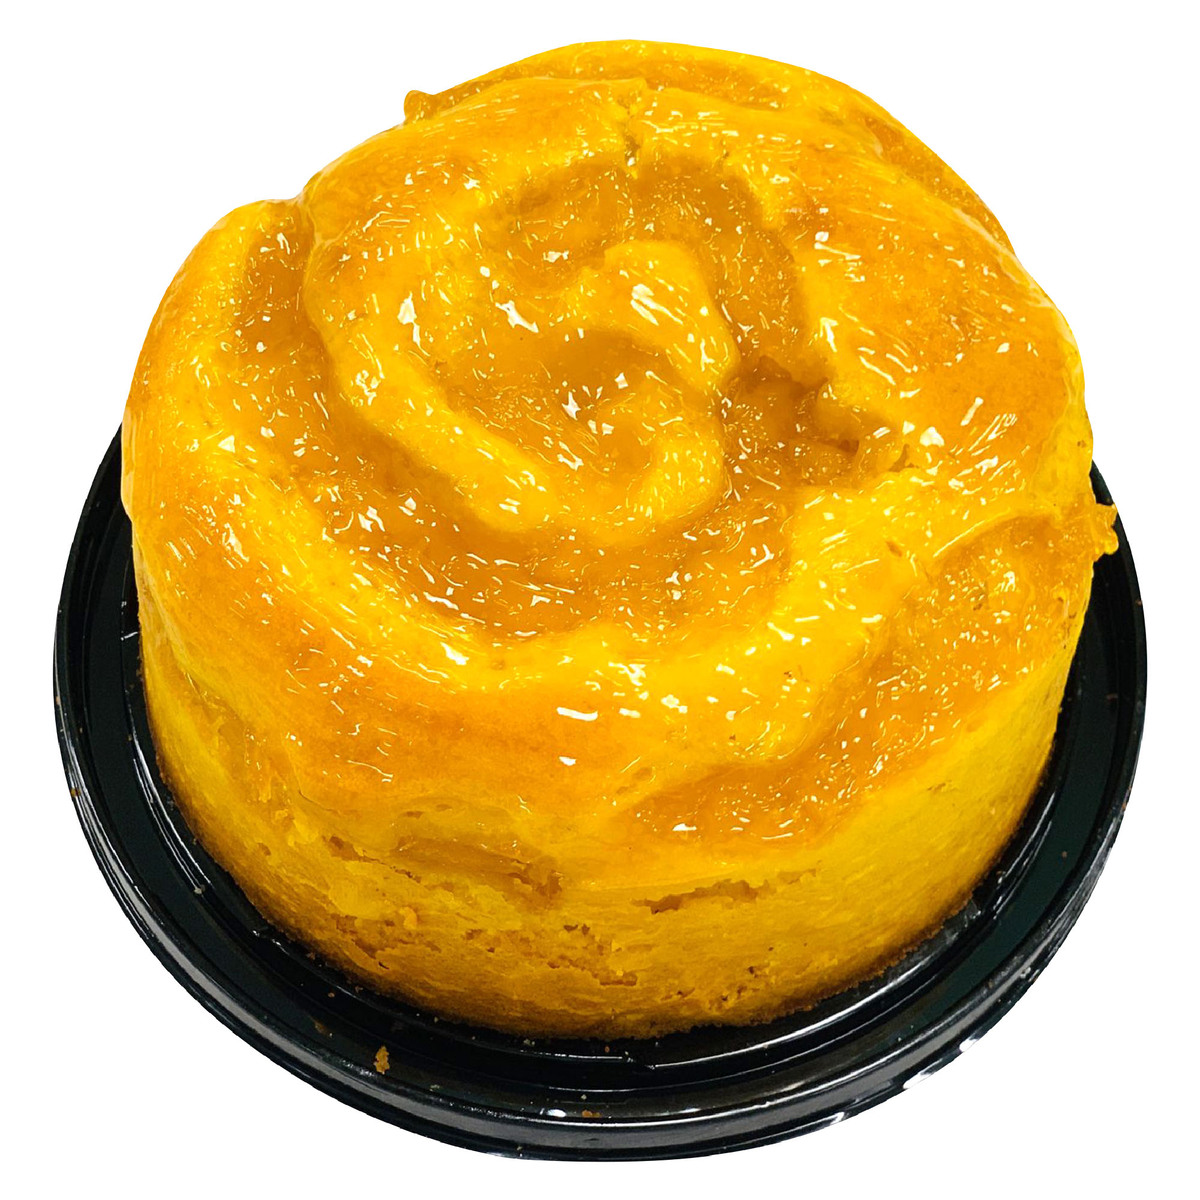 Pineapple Round Cake 500g